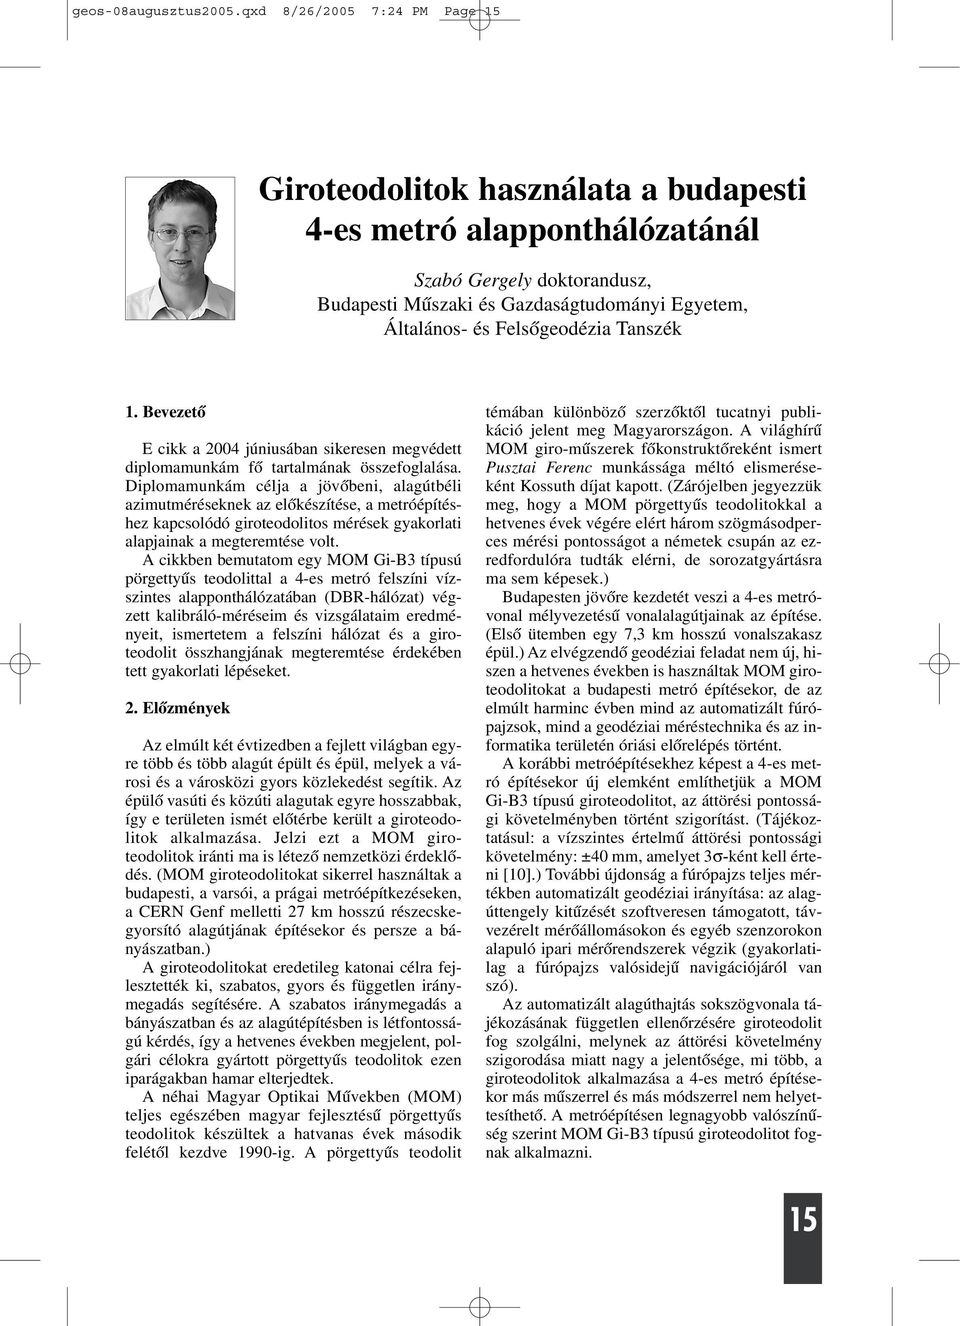 Felsõgeodézia Tanszék 1. Bevezetõ E cikk a 2004 júniusában sikeresen megvédett diplomamunkám fõ tartalmának összefoglalása.